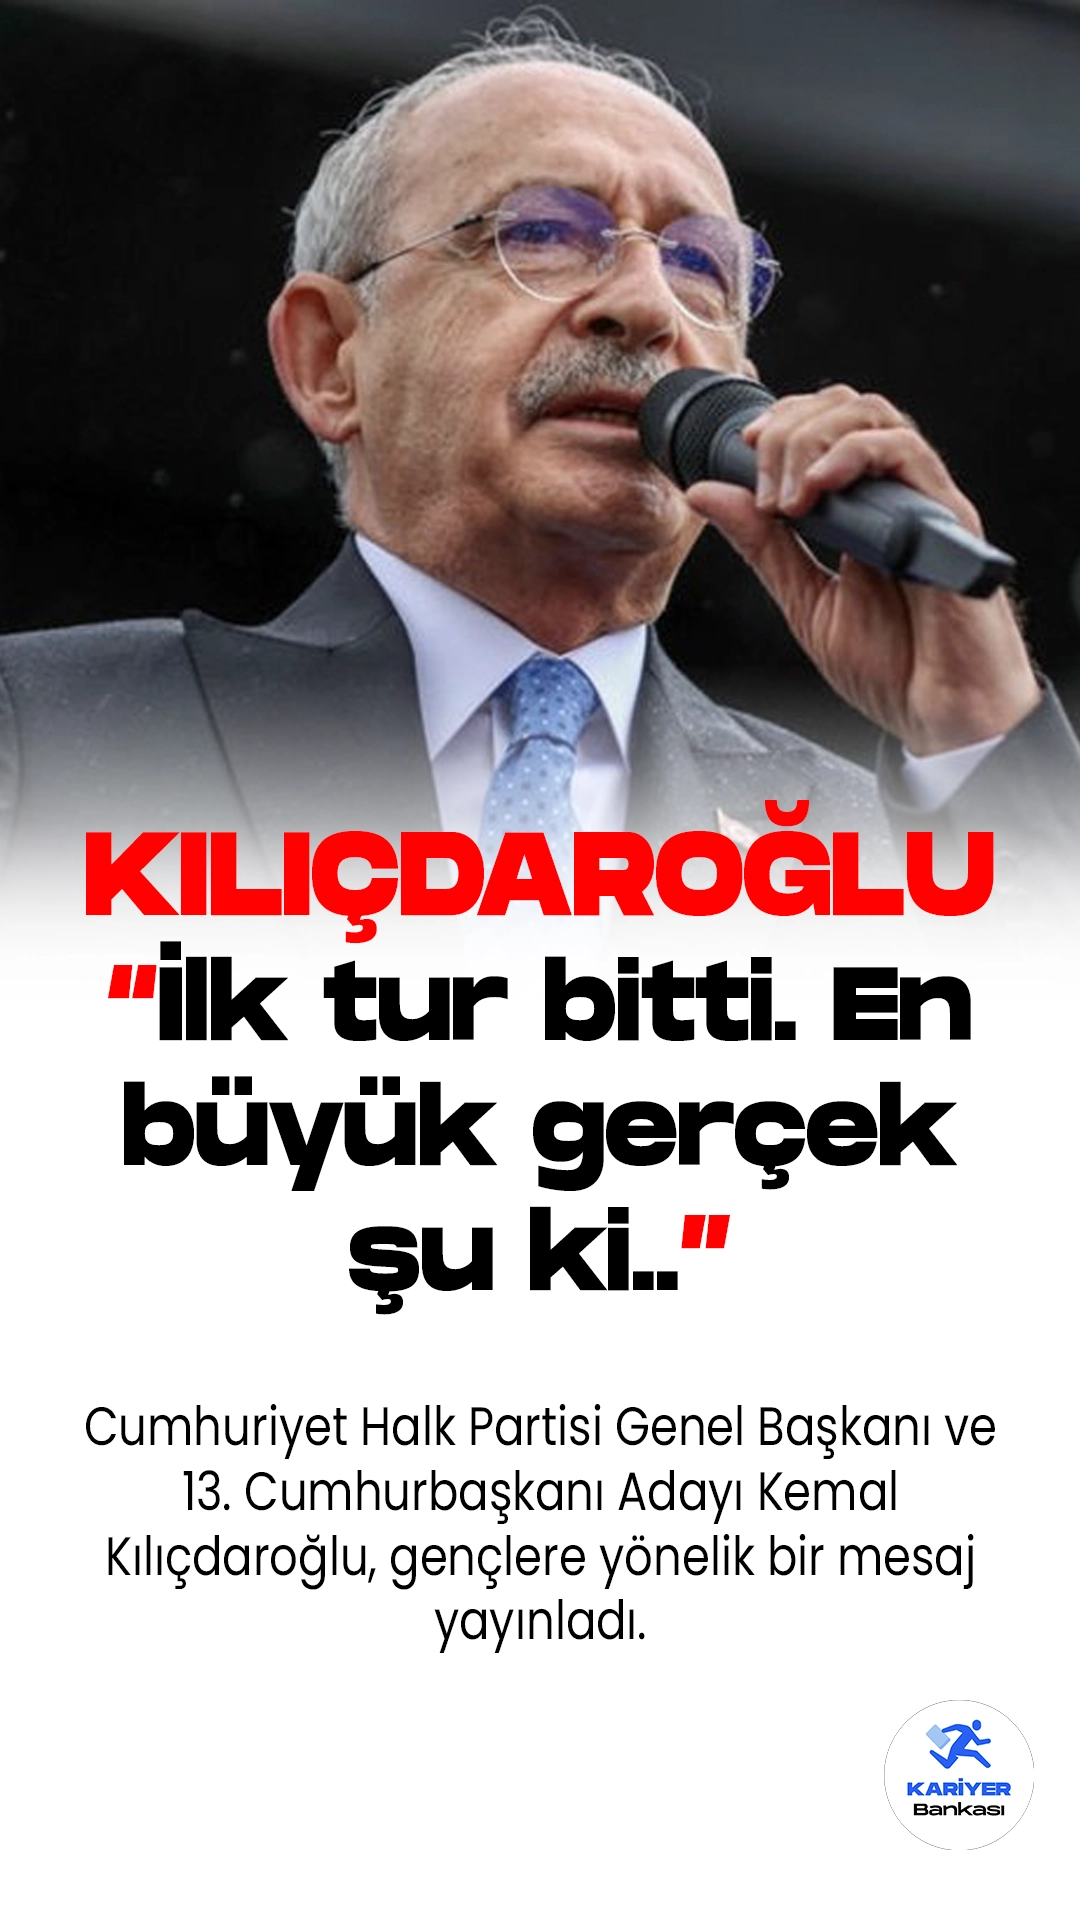 Cumhuriyet Halk Partisi Genel Başkanı ve 13. Cumhurbaşkanı Adayı Kemal Kılıçdaroğlu, gençlere yönelik bir mesaj yayınladı. Kılıçdaroğlu, sosyal medya üzerinden yaptığı açıklamada, "İlk tur bitti. En büyük gerçek şu ki, sandıktan değişim mesajı çıkmıştır. Değişim isteyenler artık bu ülkede istemeyenlerden daha fazla." ifadelerini kullandı.